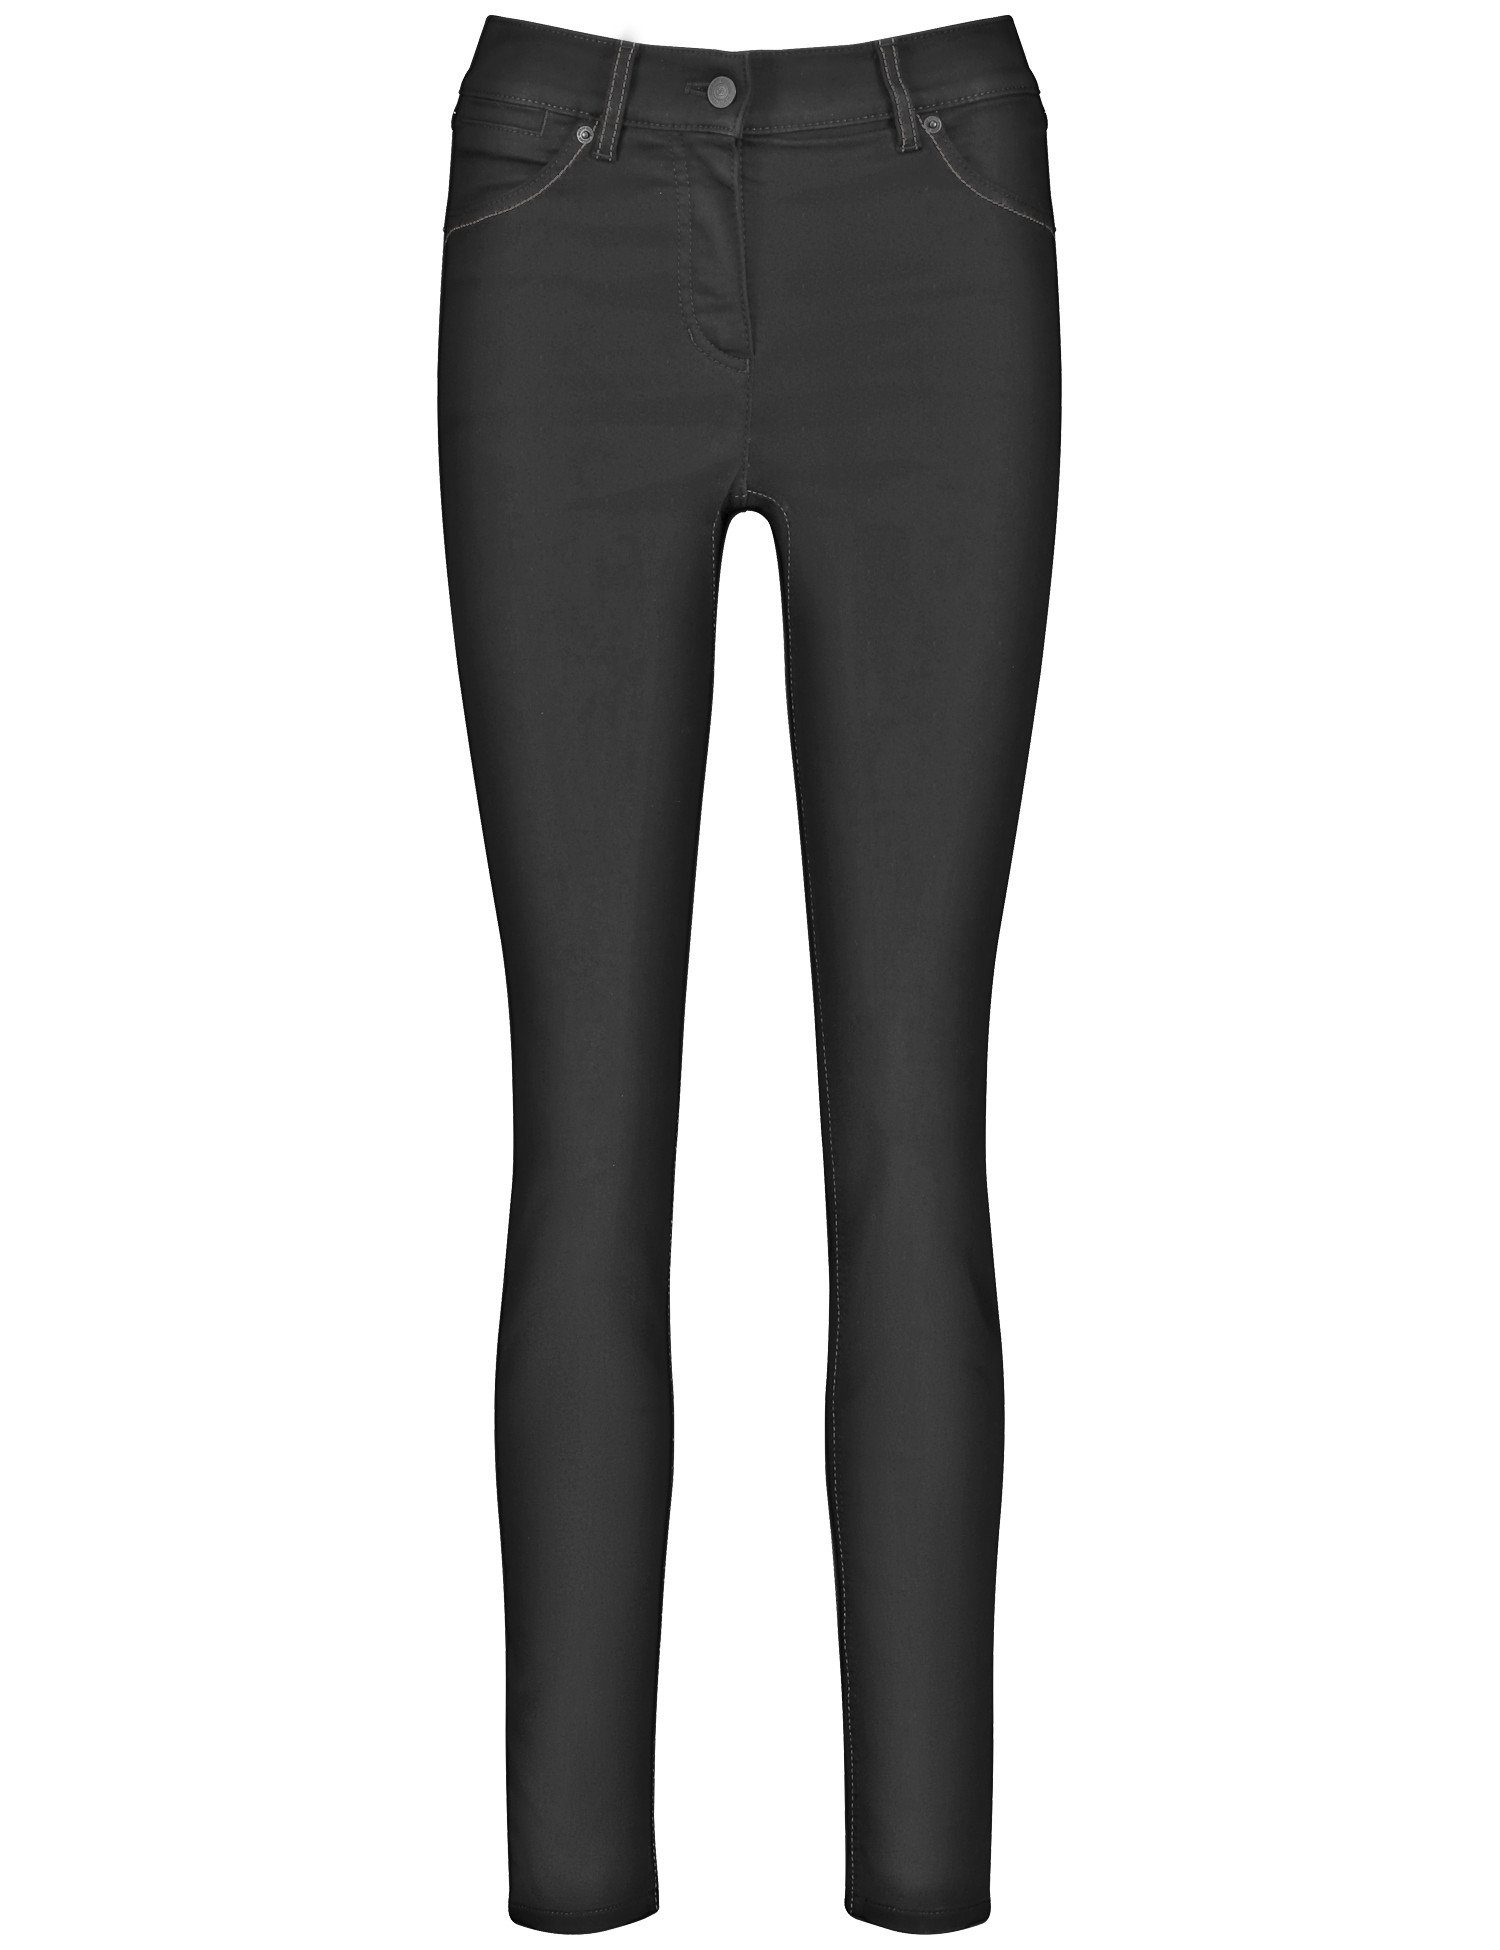 Black GERRY Black 5-Pocket Best4me Stretch-Jeans Jeans Denim Skinny WEBER